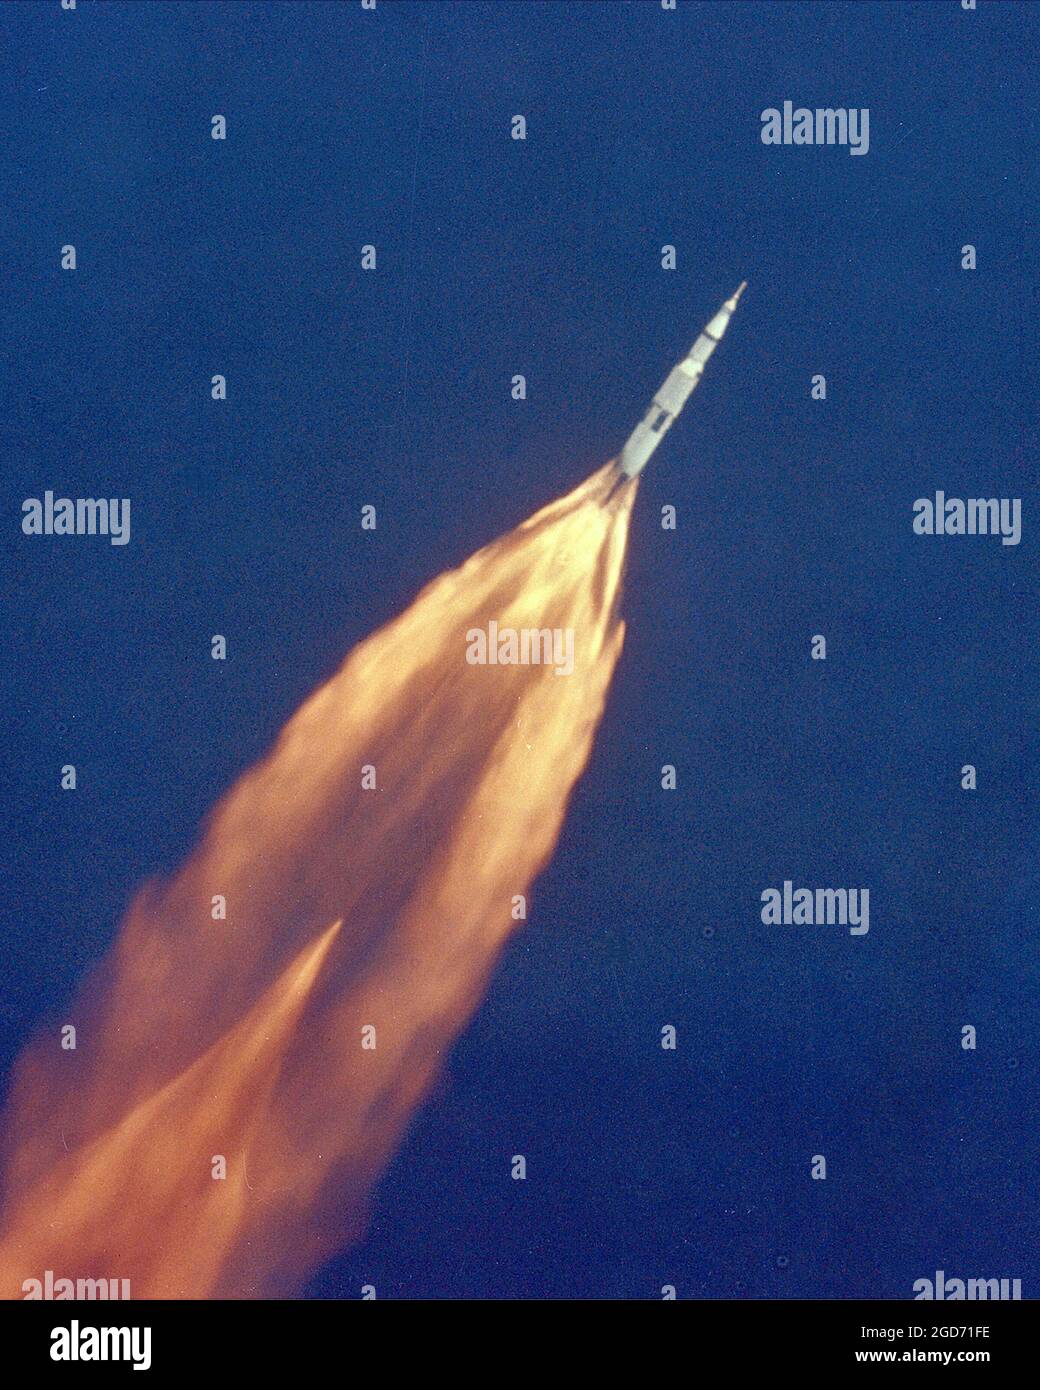 Die Saturn V Rakete im Flug, die sich dem Weltraum in einem klaren blauen Himmel mit einem riesigen Flammenschwanz nähert, vom Cape Canaveral in Florida. Dies ist die Mission Apollo 11, die auf den Mond ging. Es wurde am 16. Juli 1969 gestartet. Stockfoto